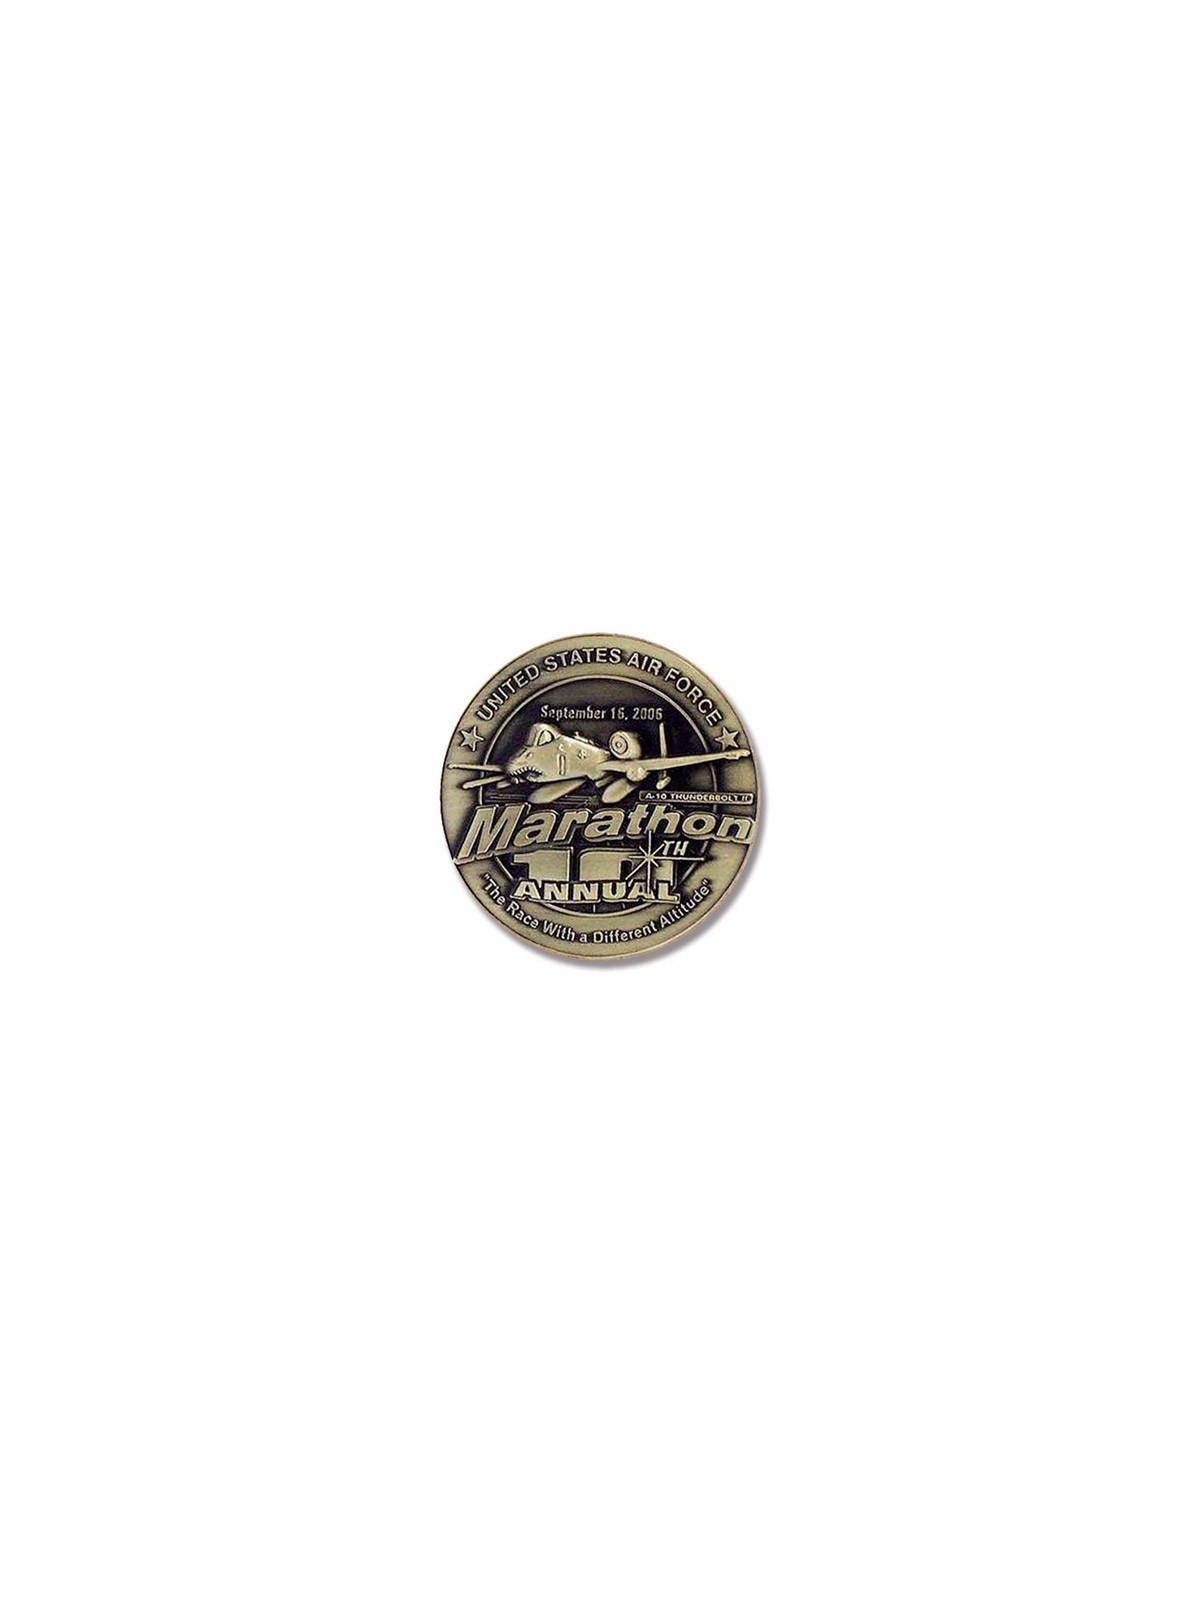 66-009 Médaille 2D personnalisé